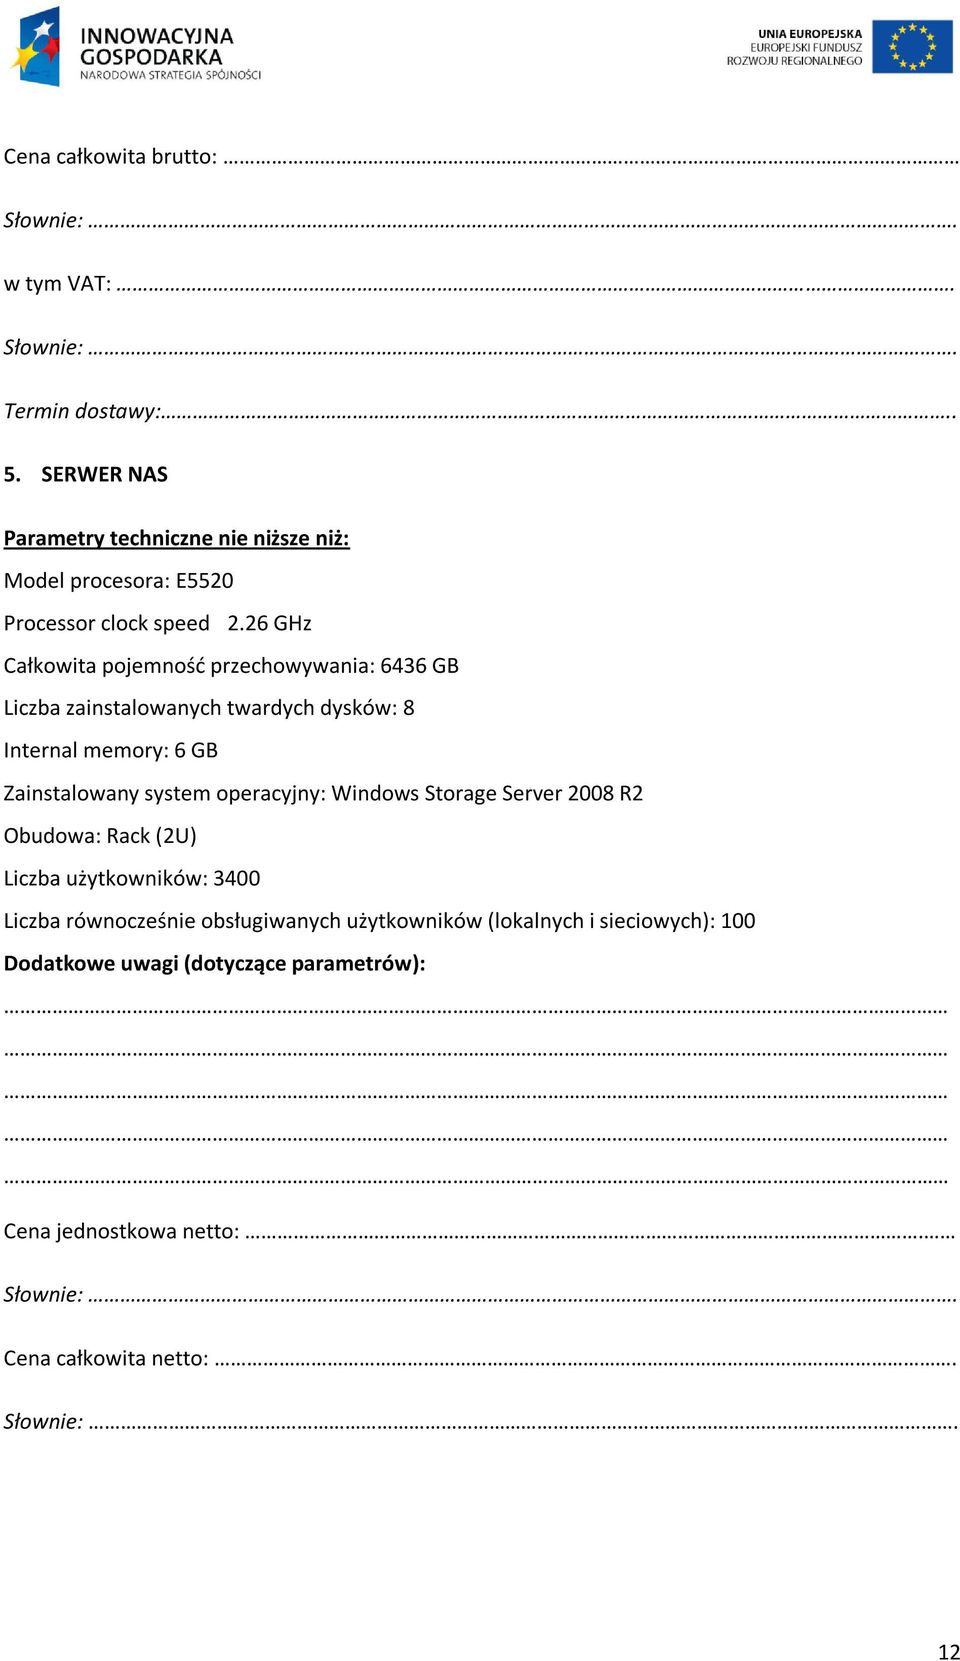 Zainstalowany system operacyjny: Windows Storage Server 2008 R2 Obudowa: Rack (2U) Liczba użytkowników: 3400 Liczba